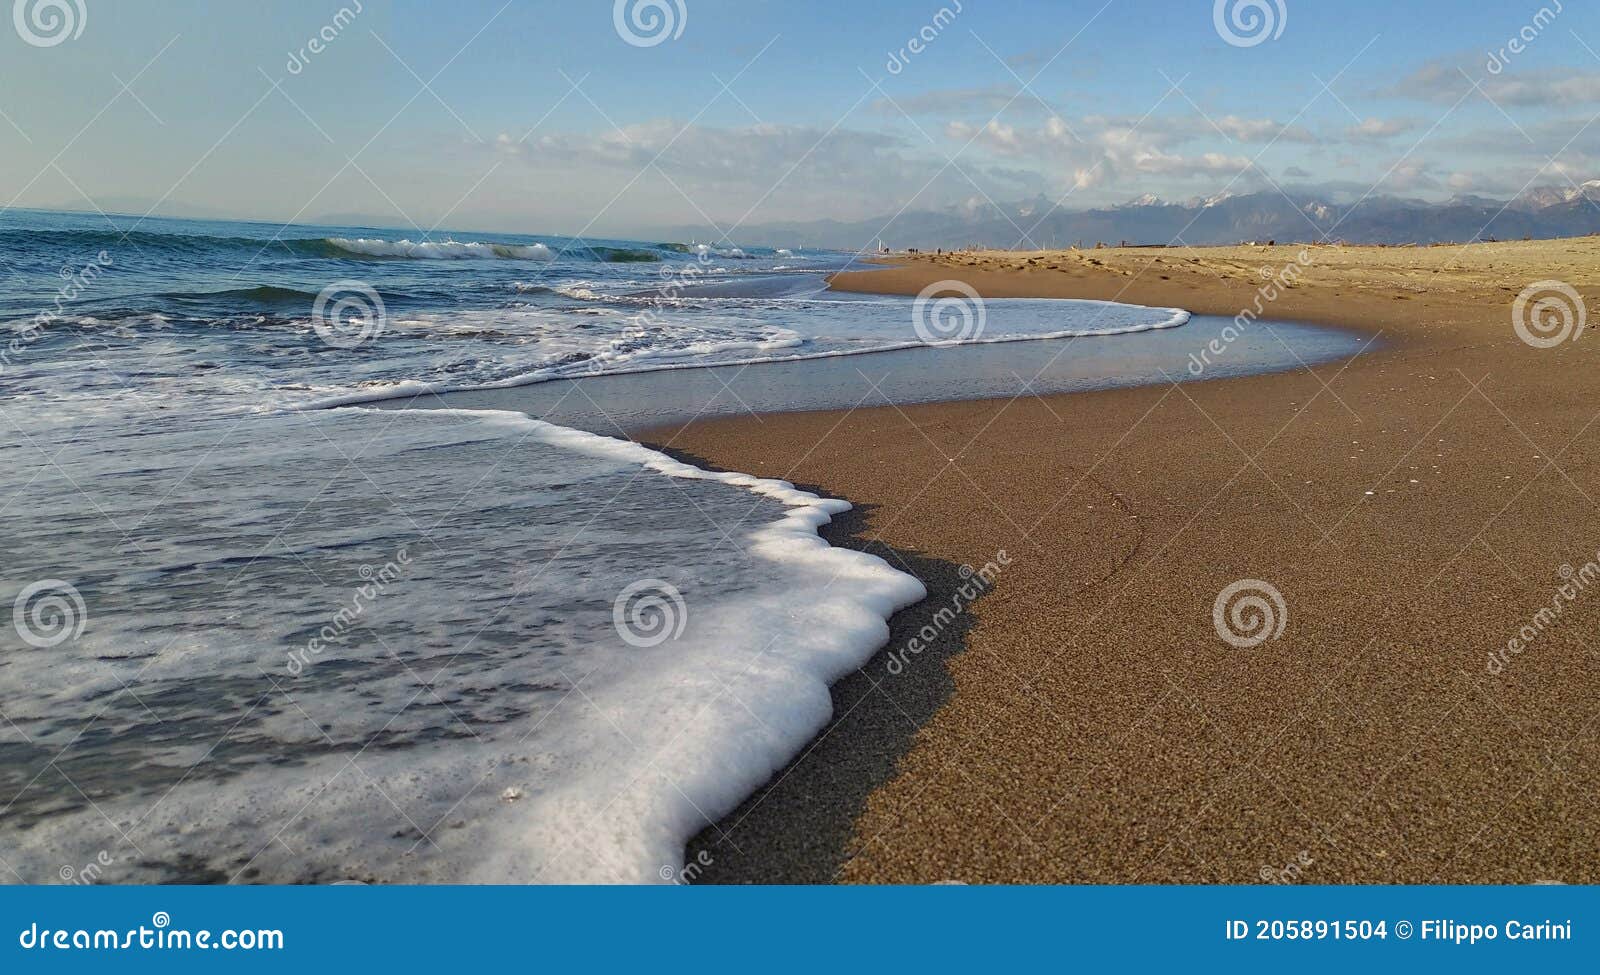 the pristine beach, located in the south of viareggio; known as darsena